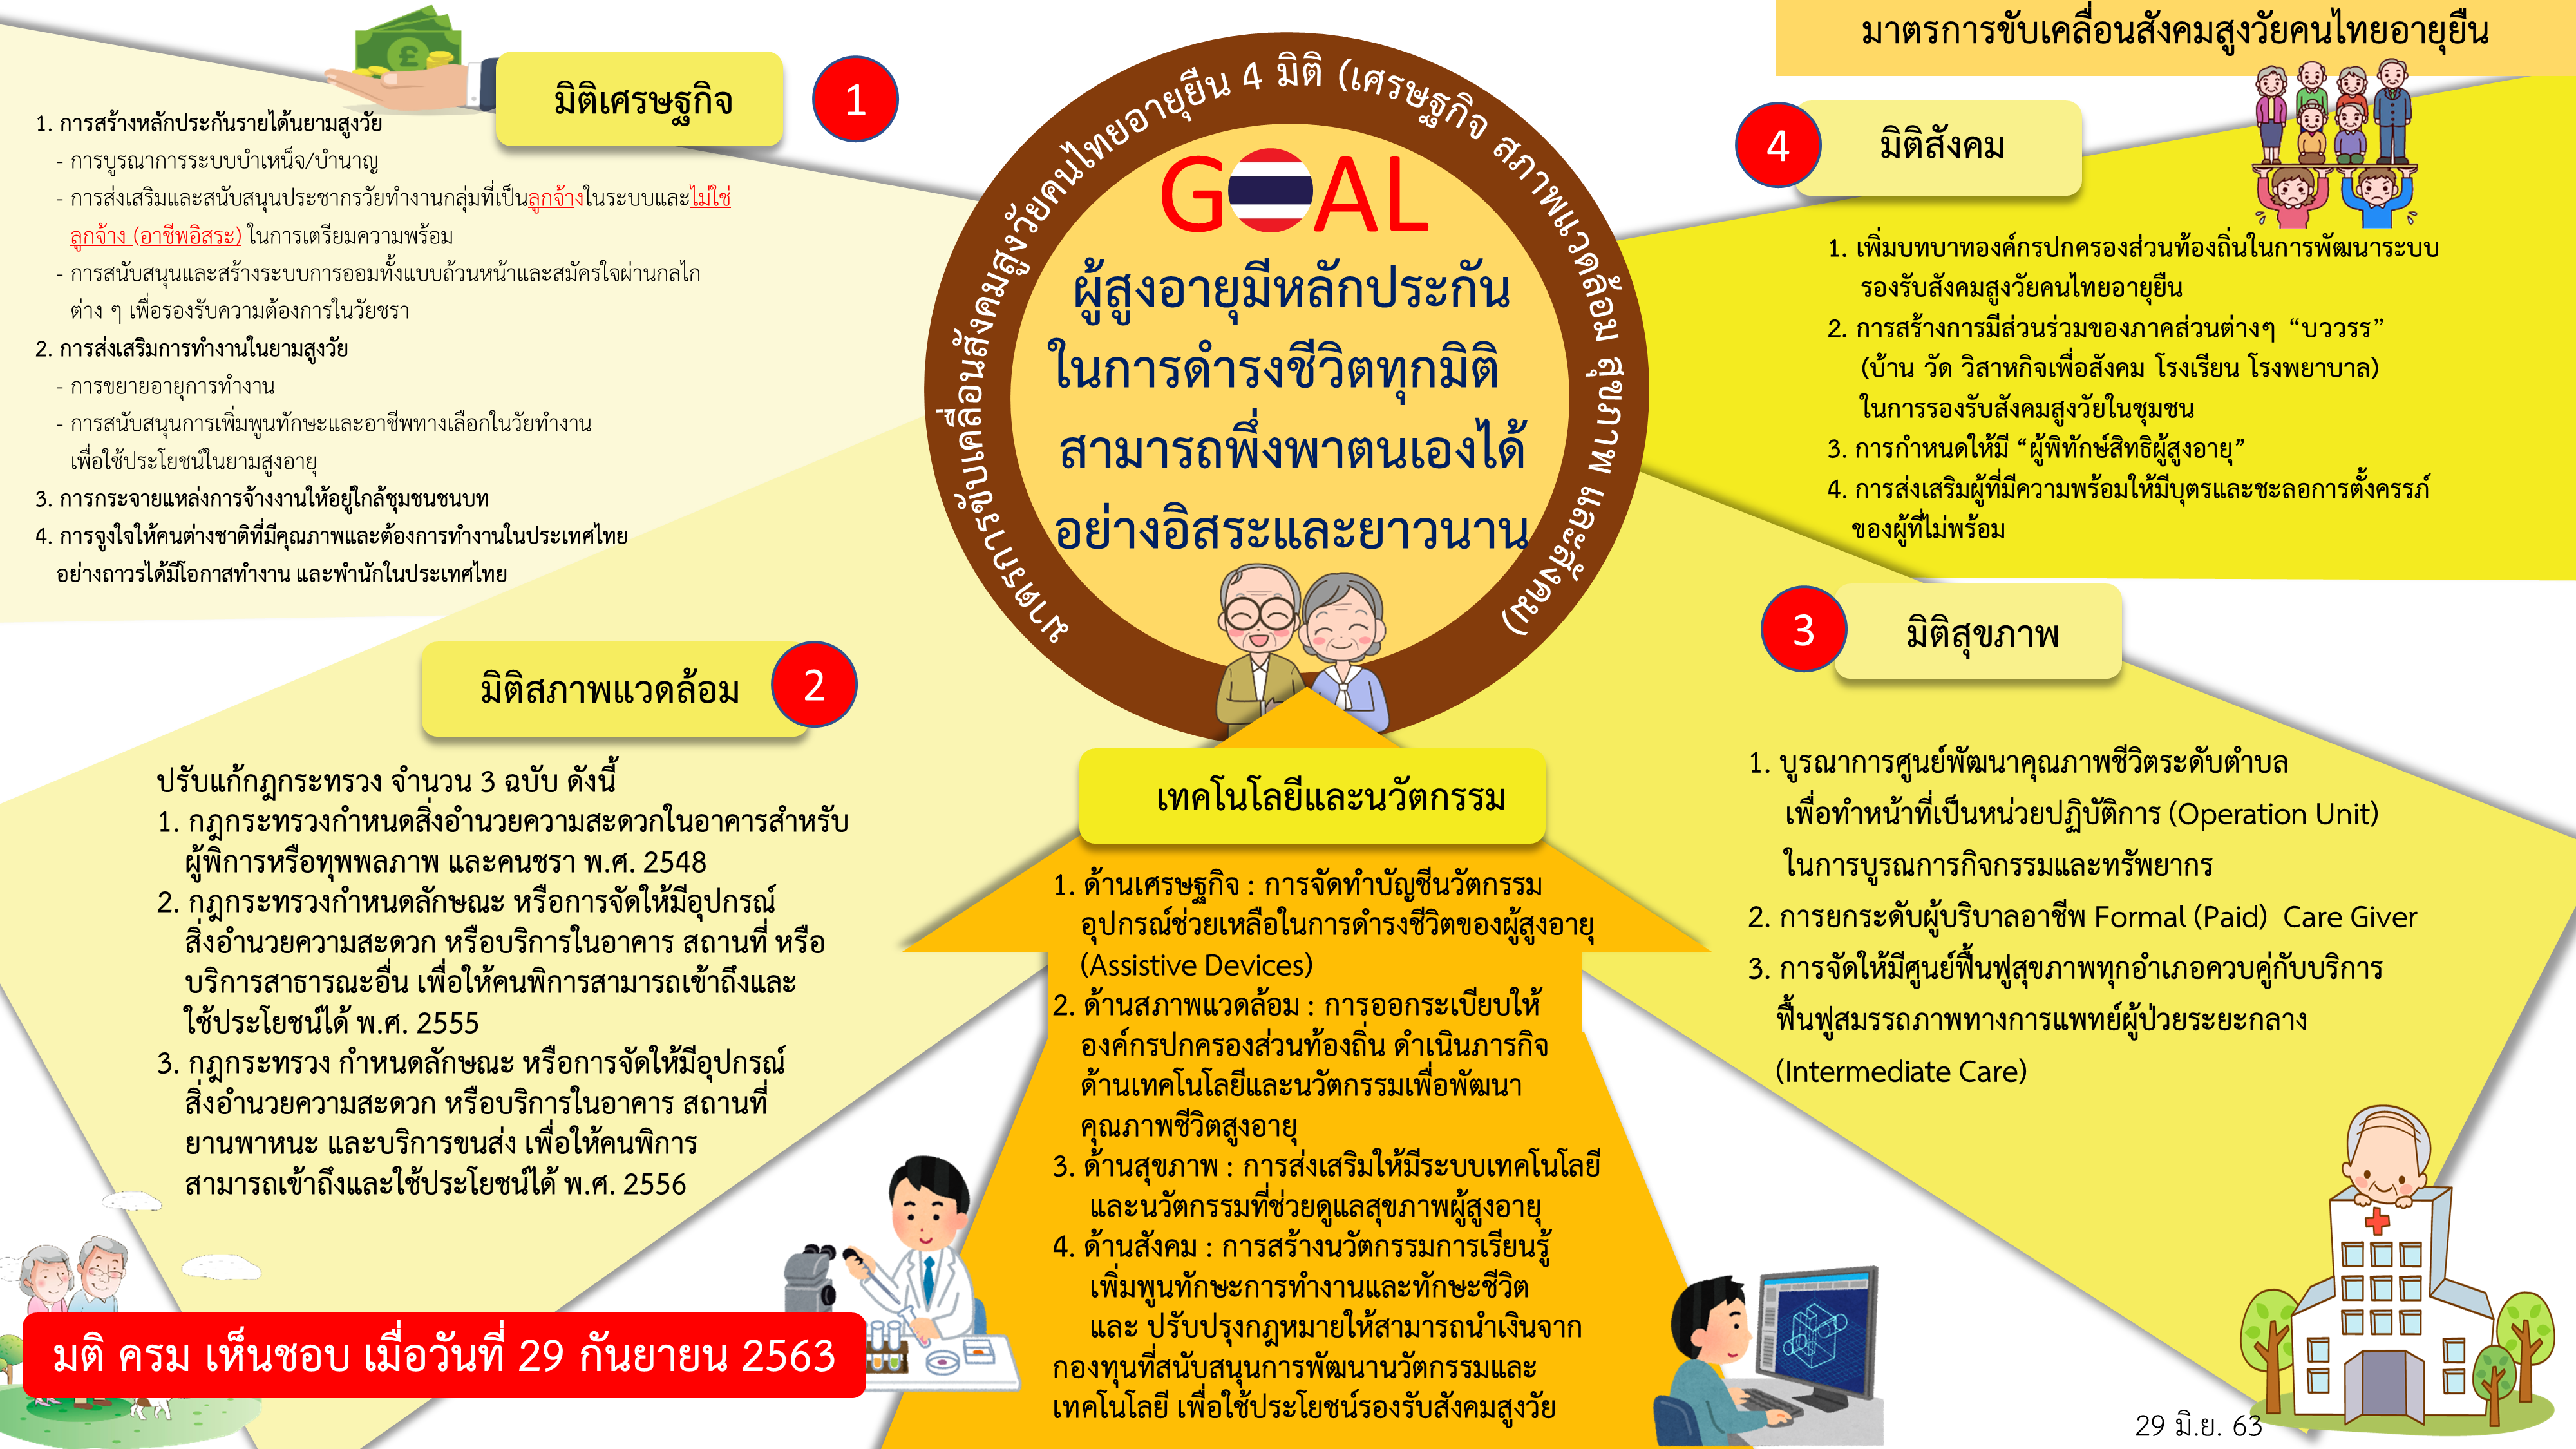 มาตรการขับเคลื่อนสังคมสูงวัยคนไทยอายุยืน 4 มิติ